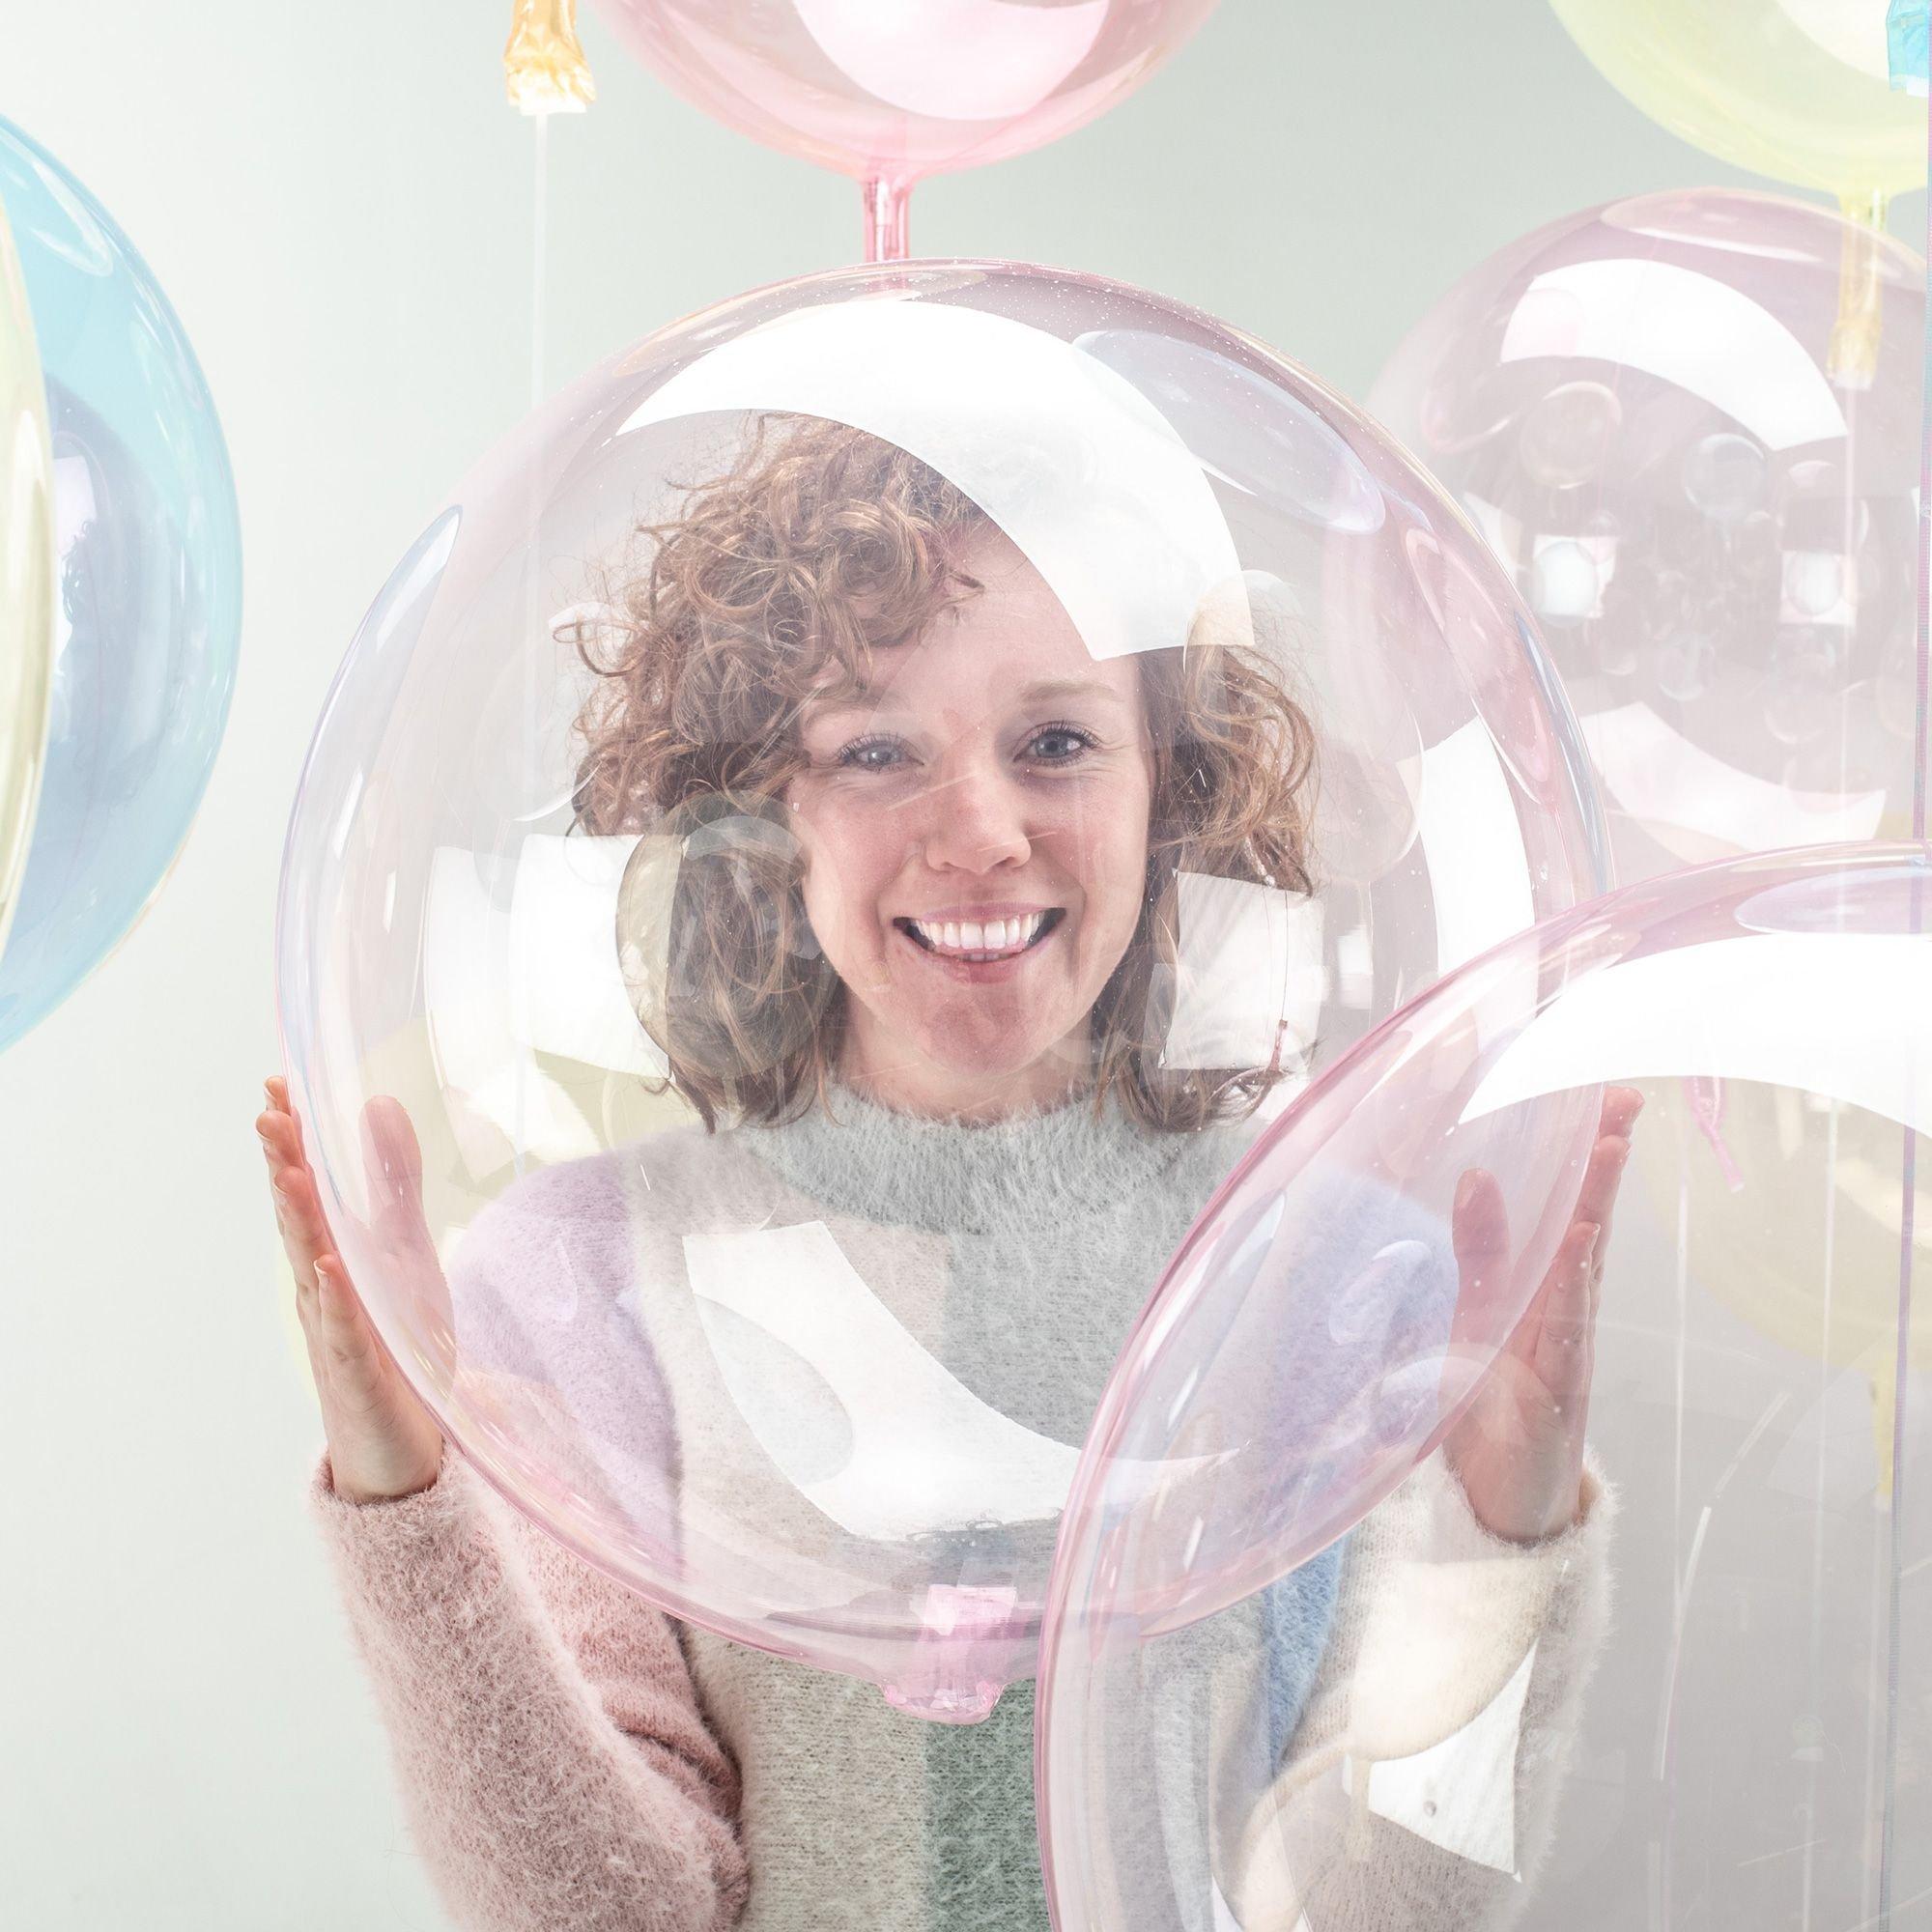 Ballon Crystal Clearz - 45 cm - Couleur au Choix - Jour de Fête